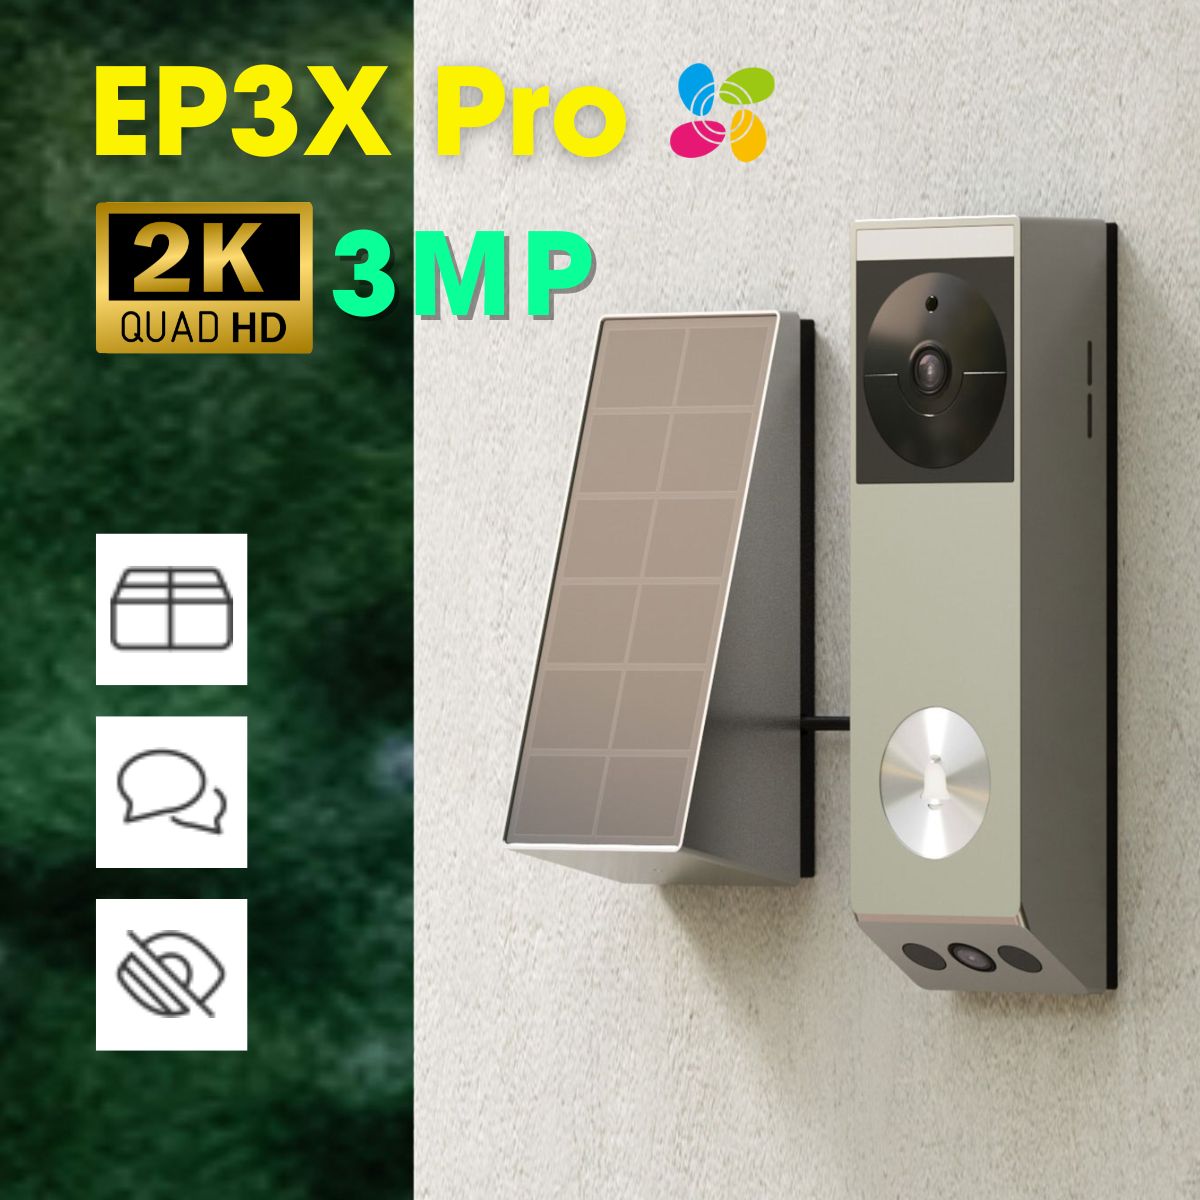 Chuông cửa pin mặt trời Solar Ezviz EP3X Pro ống kính kép 2K 3MP và 1080p, phát hiện gói hàng, đàm thoại 2 chiều, khu vực riêng tư không quay phim